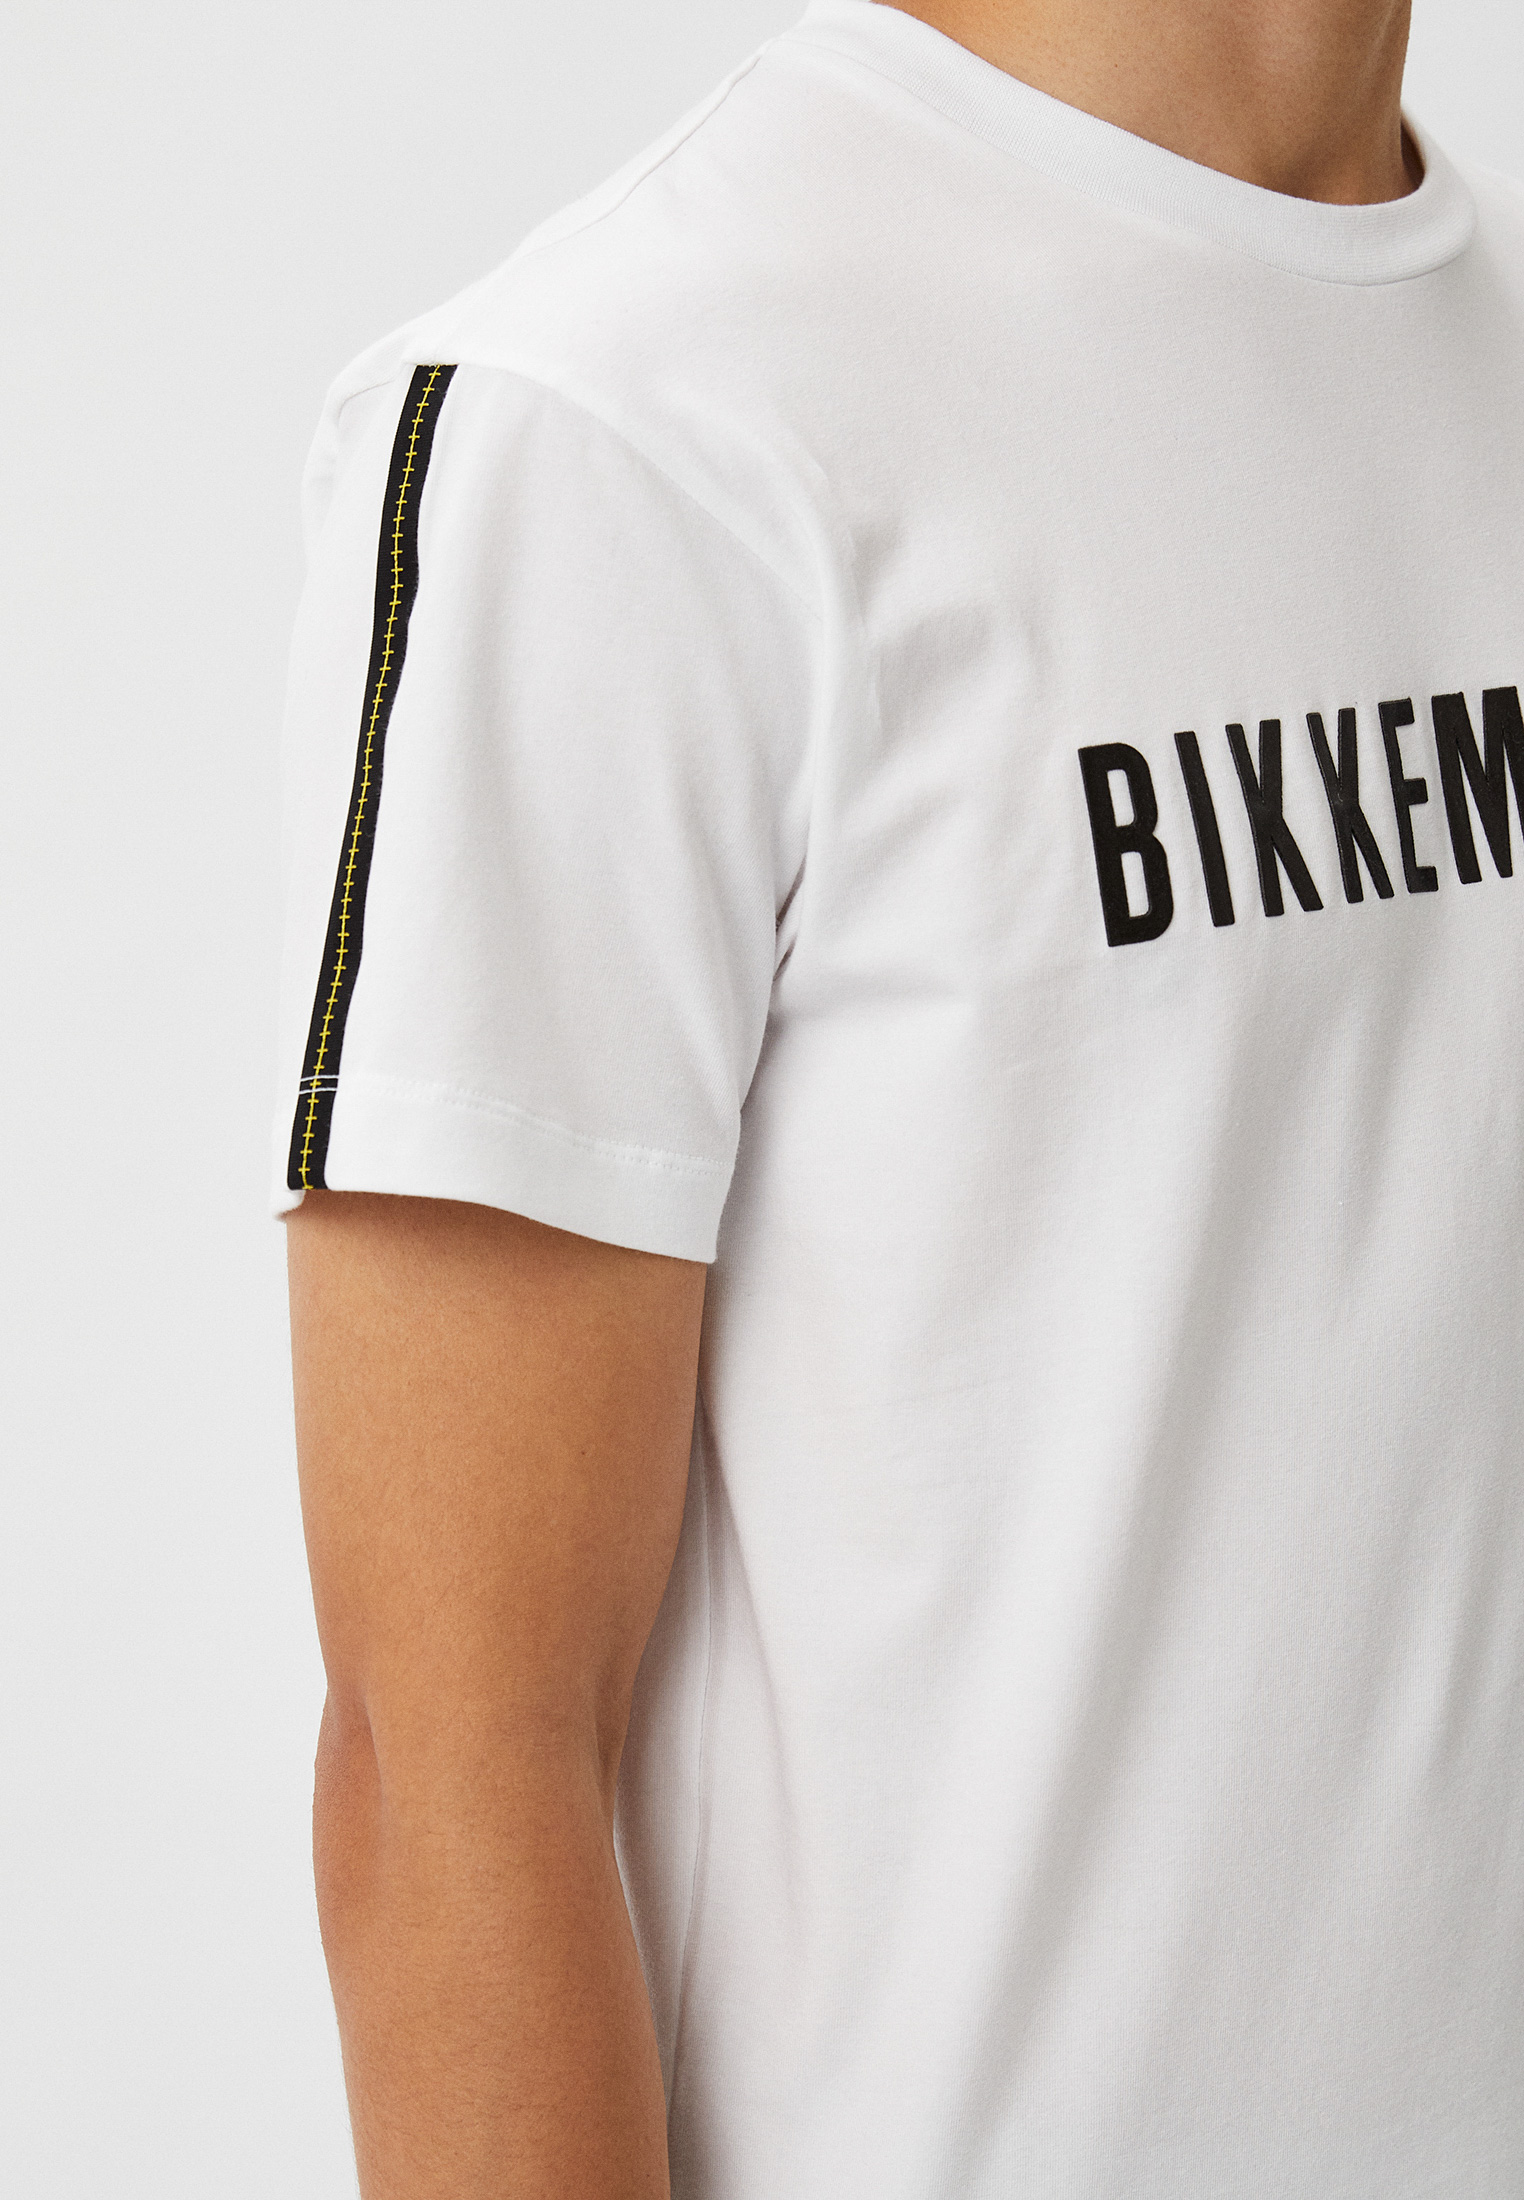 Мужская футболка Bikkembergs (Биккембергс) C 4 134 01 E 2286: изображение 4